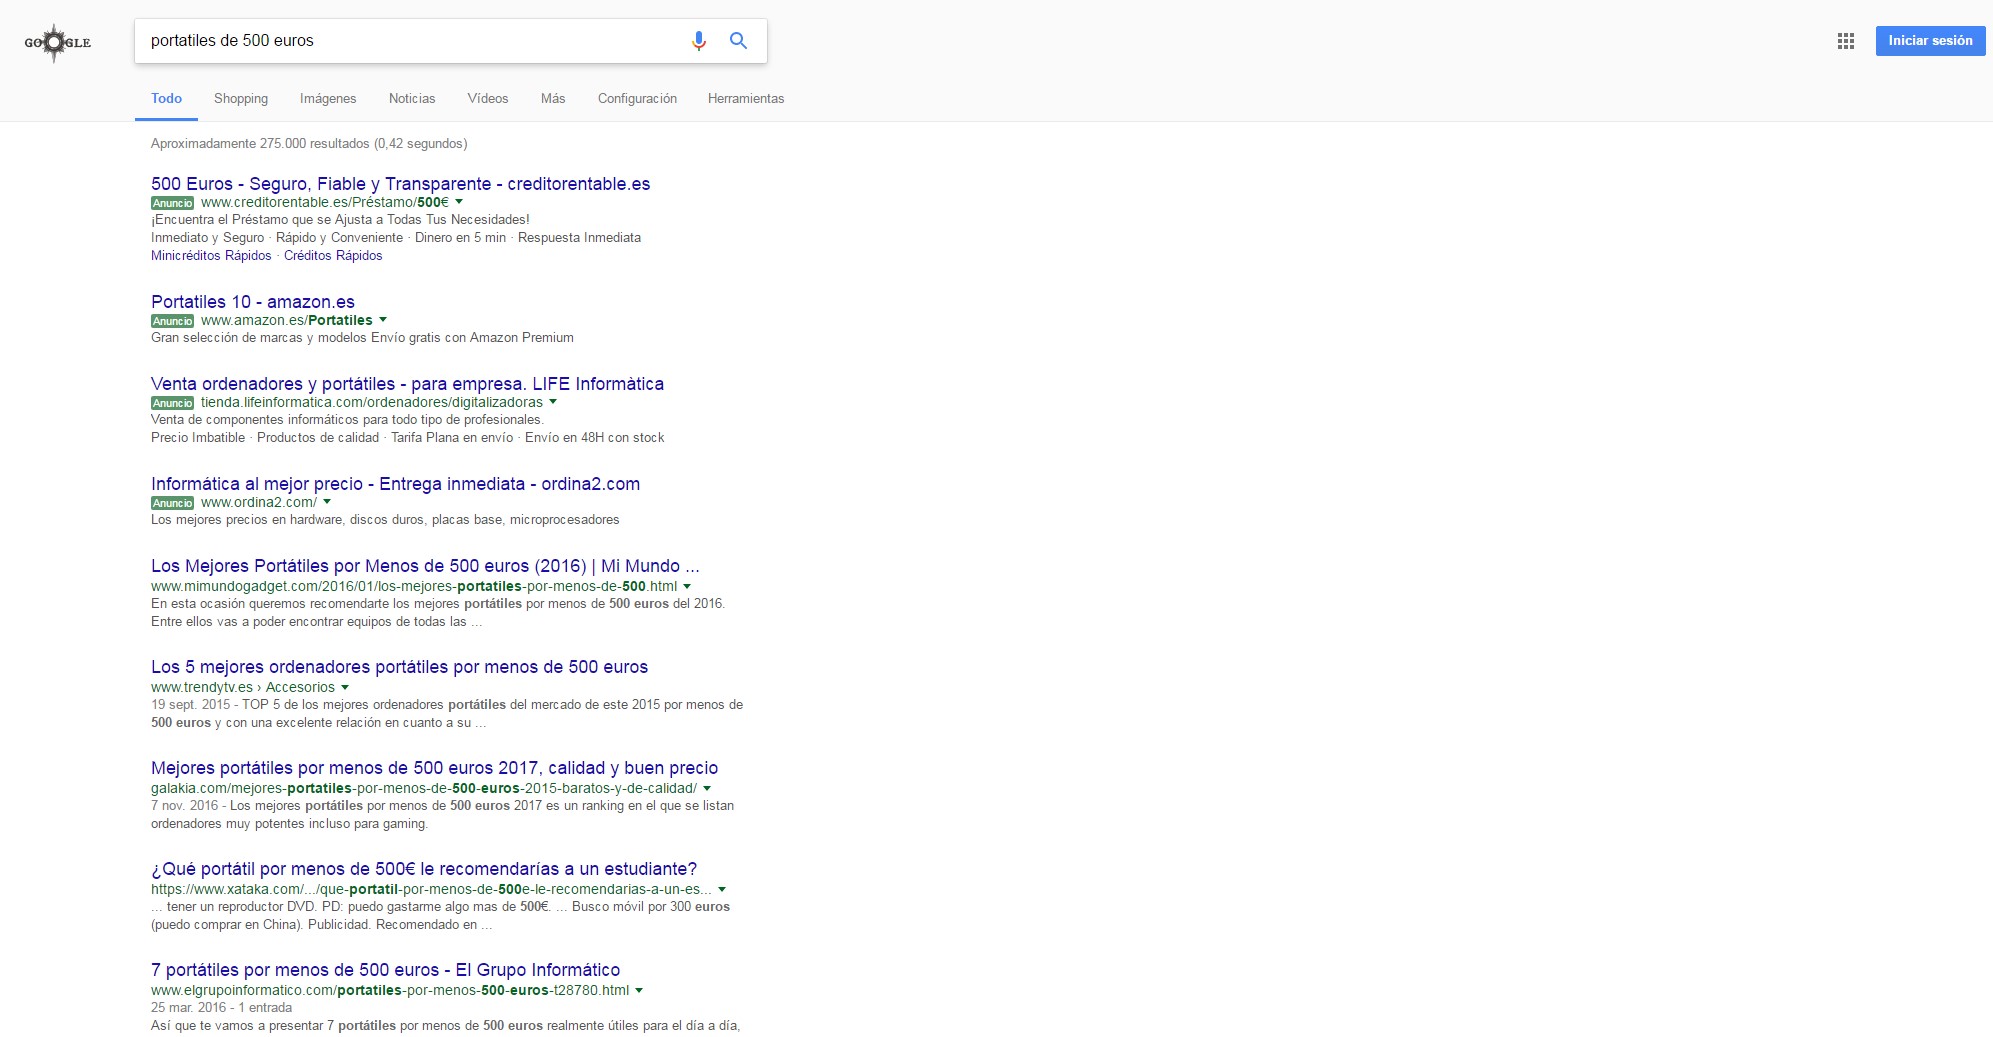 Resultados de búsqueda en Google para “portátiles de 500 euros”